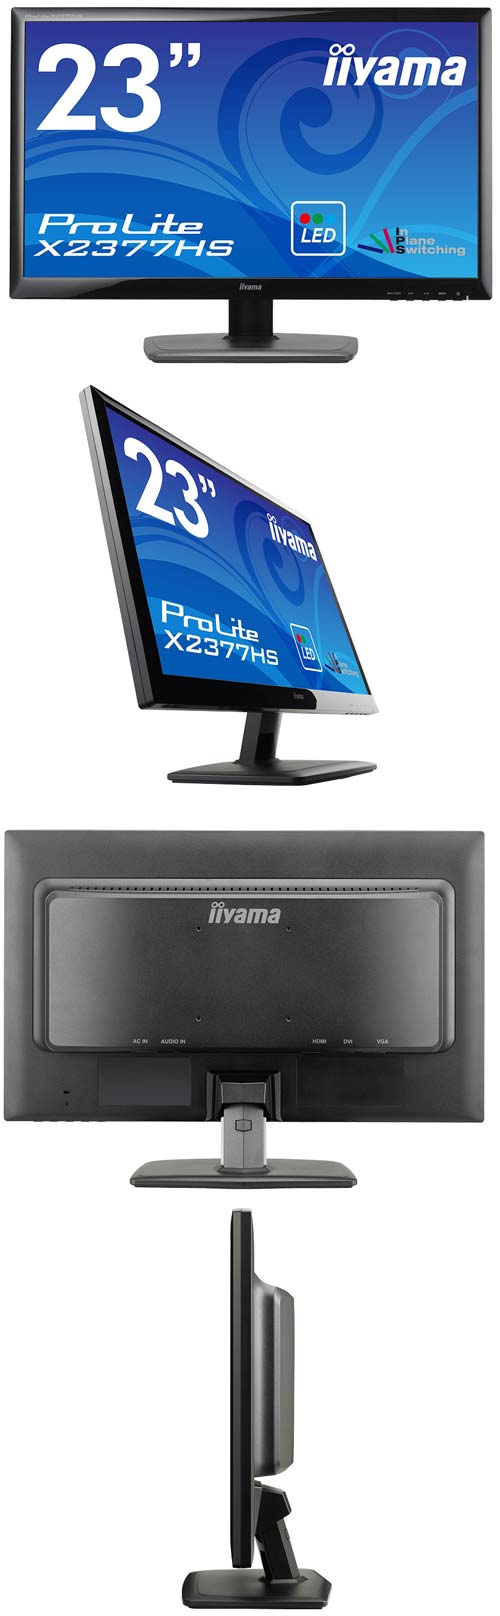 Iiyama предлагает монитор ProLite X2377HS